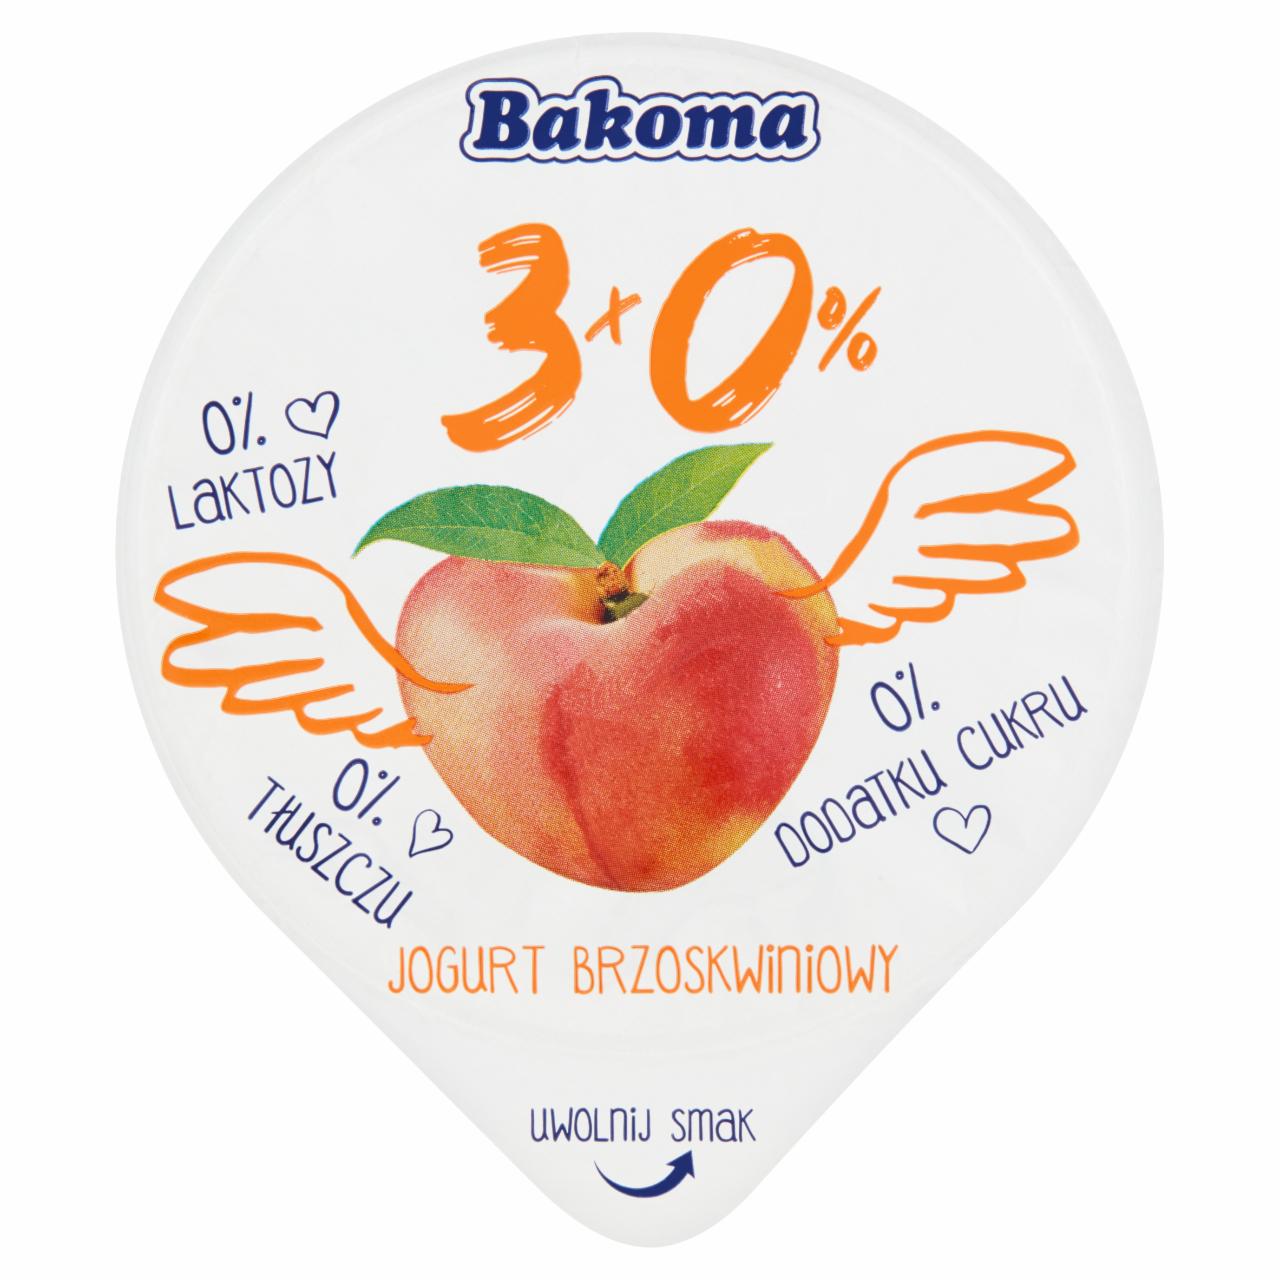 Zdjęcia - Bakoma 3x0% Jogurt brzoskwiniowy 140 g